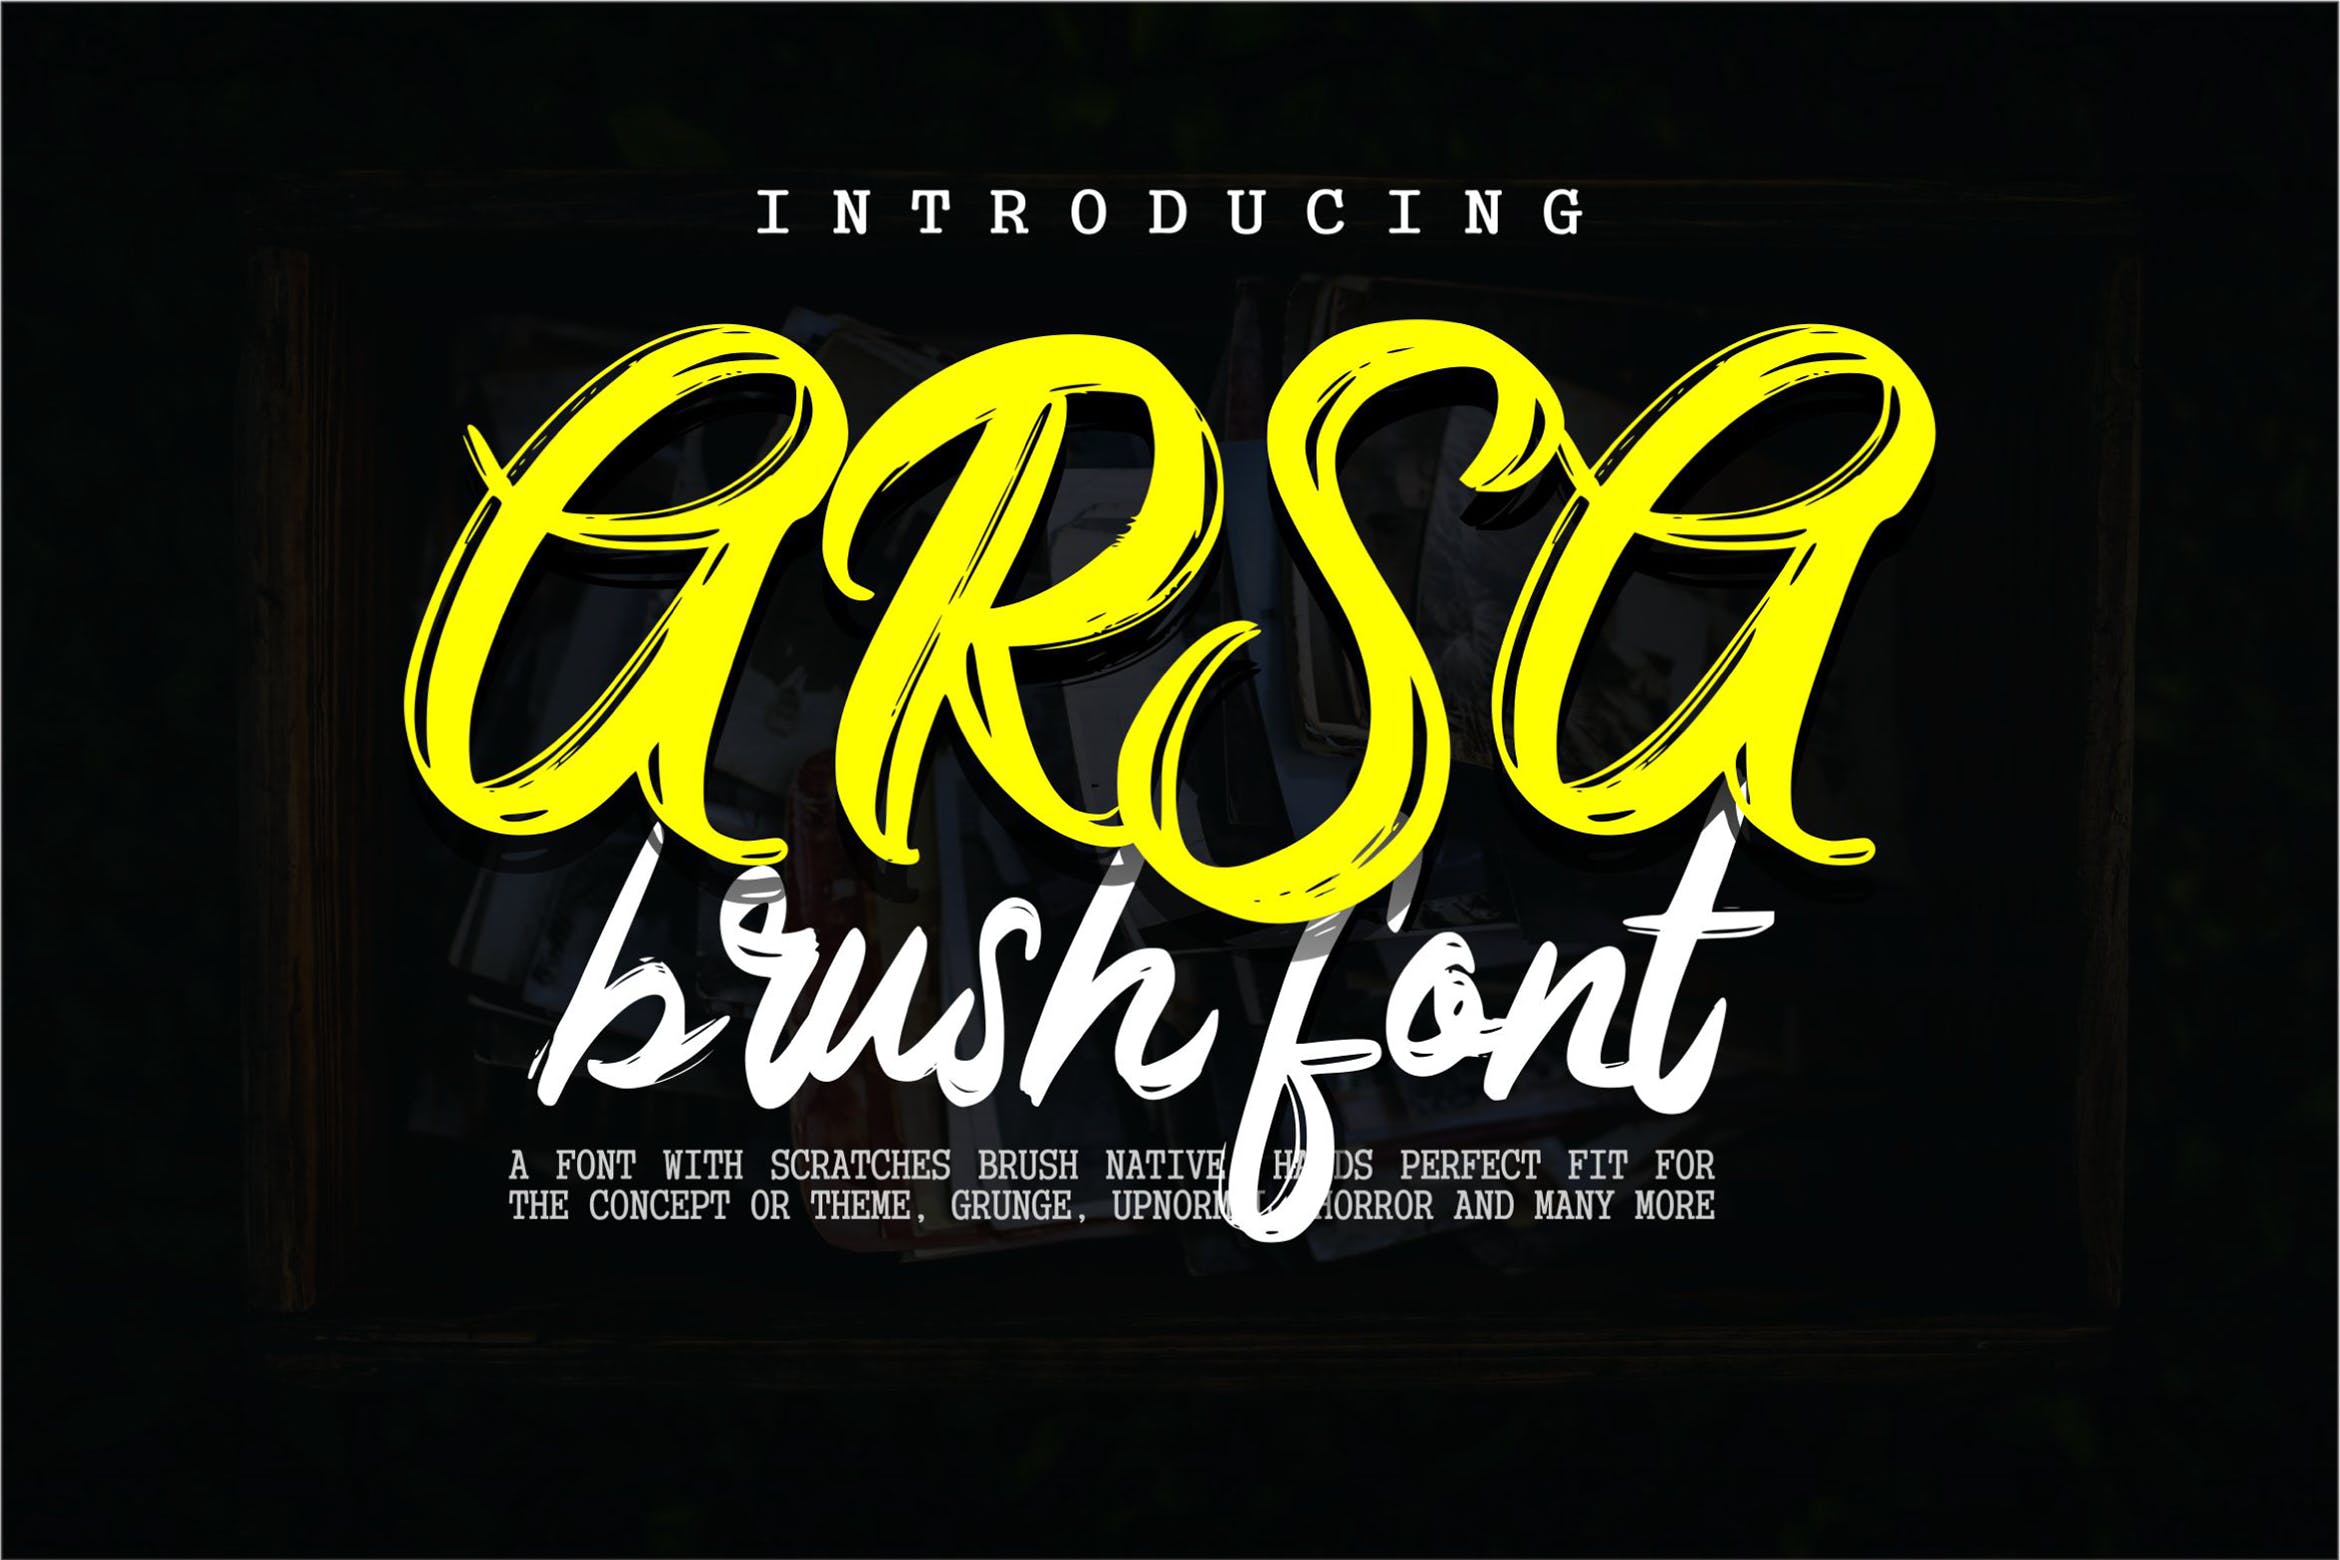 印刷排版设计英文笔刷书法字体下载 Arsa – Brush